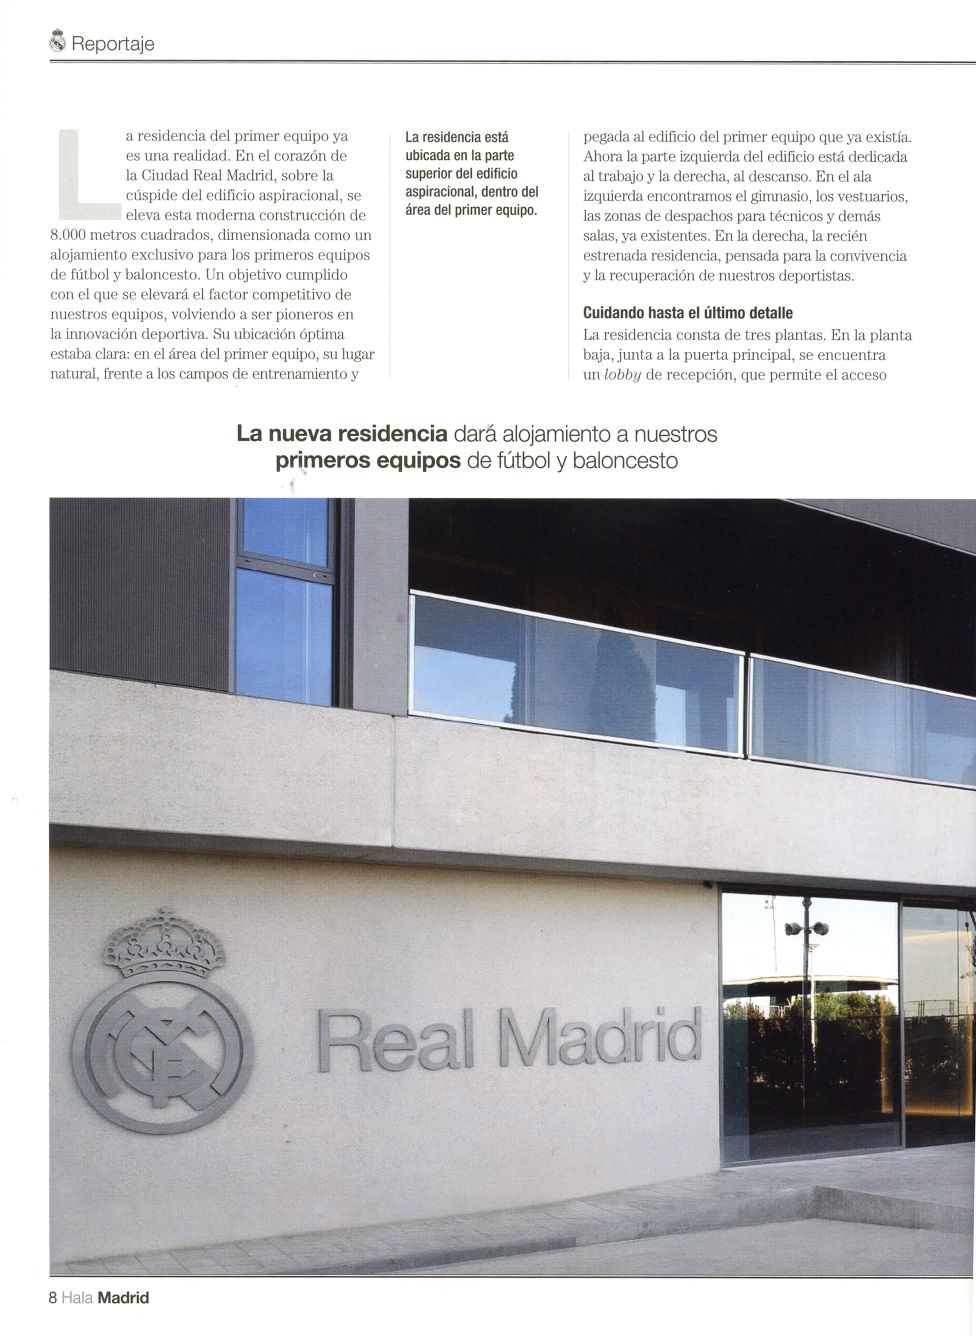 განახლებული Ciudad Real Madrid